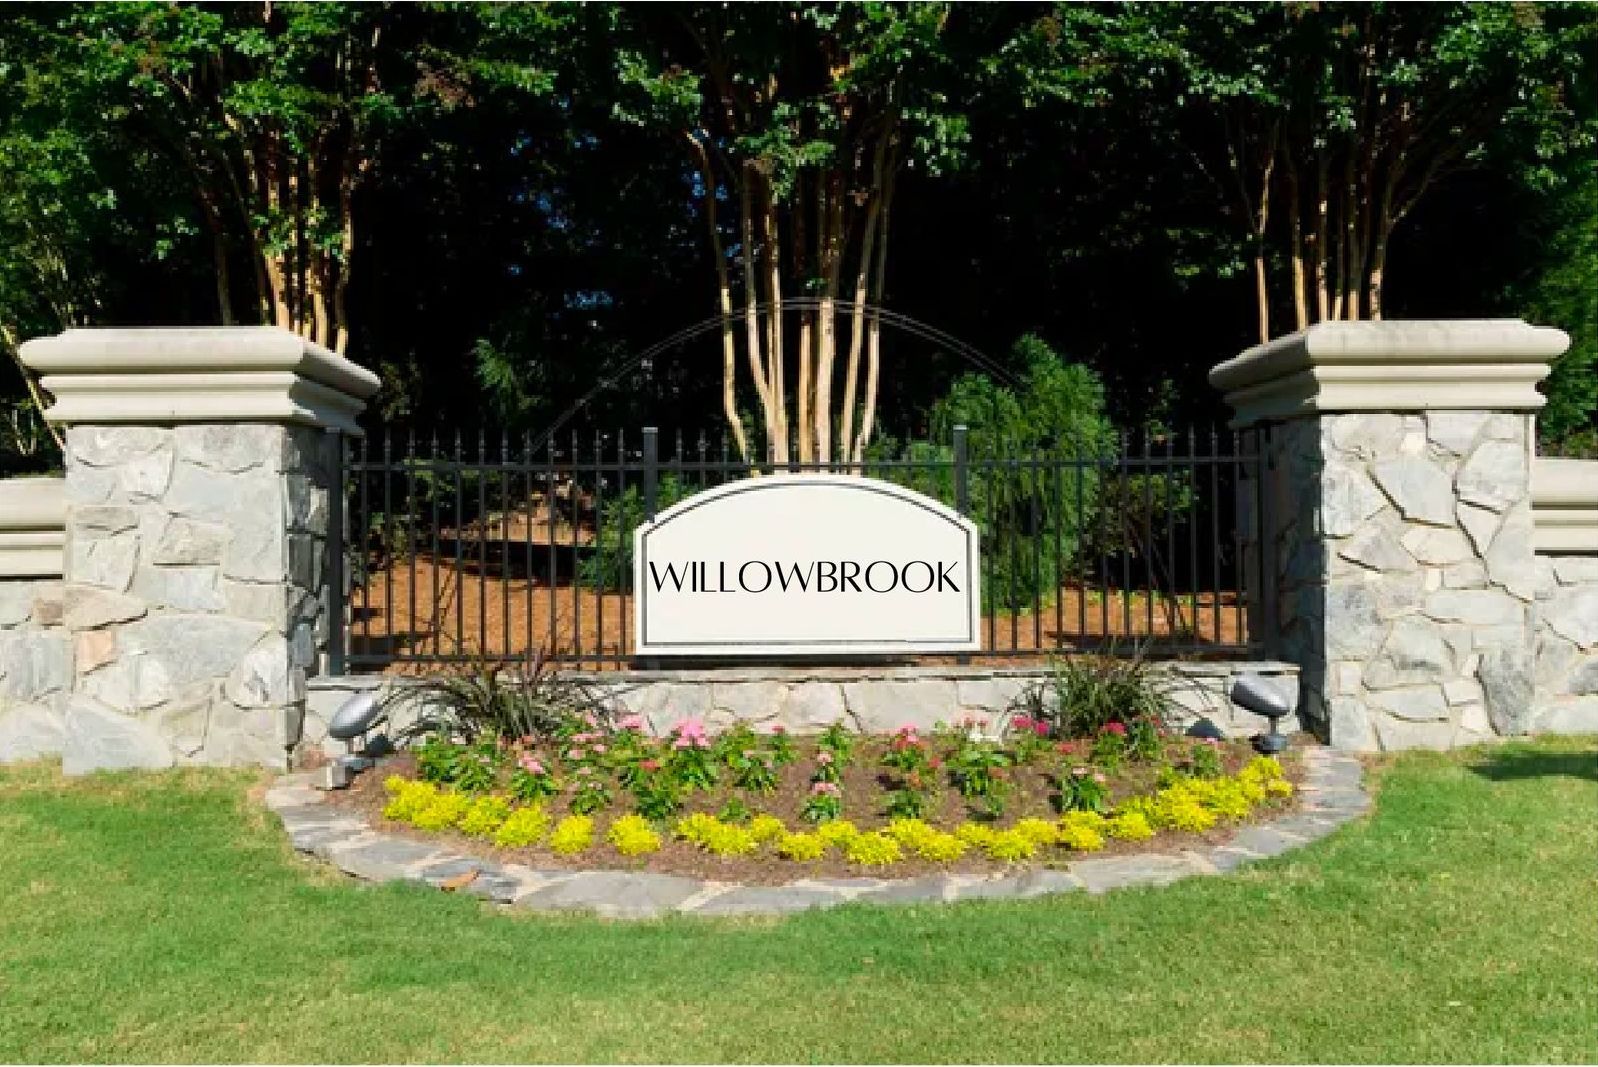 Willowbrook sign